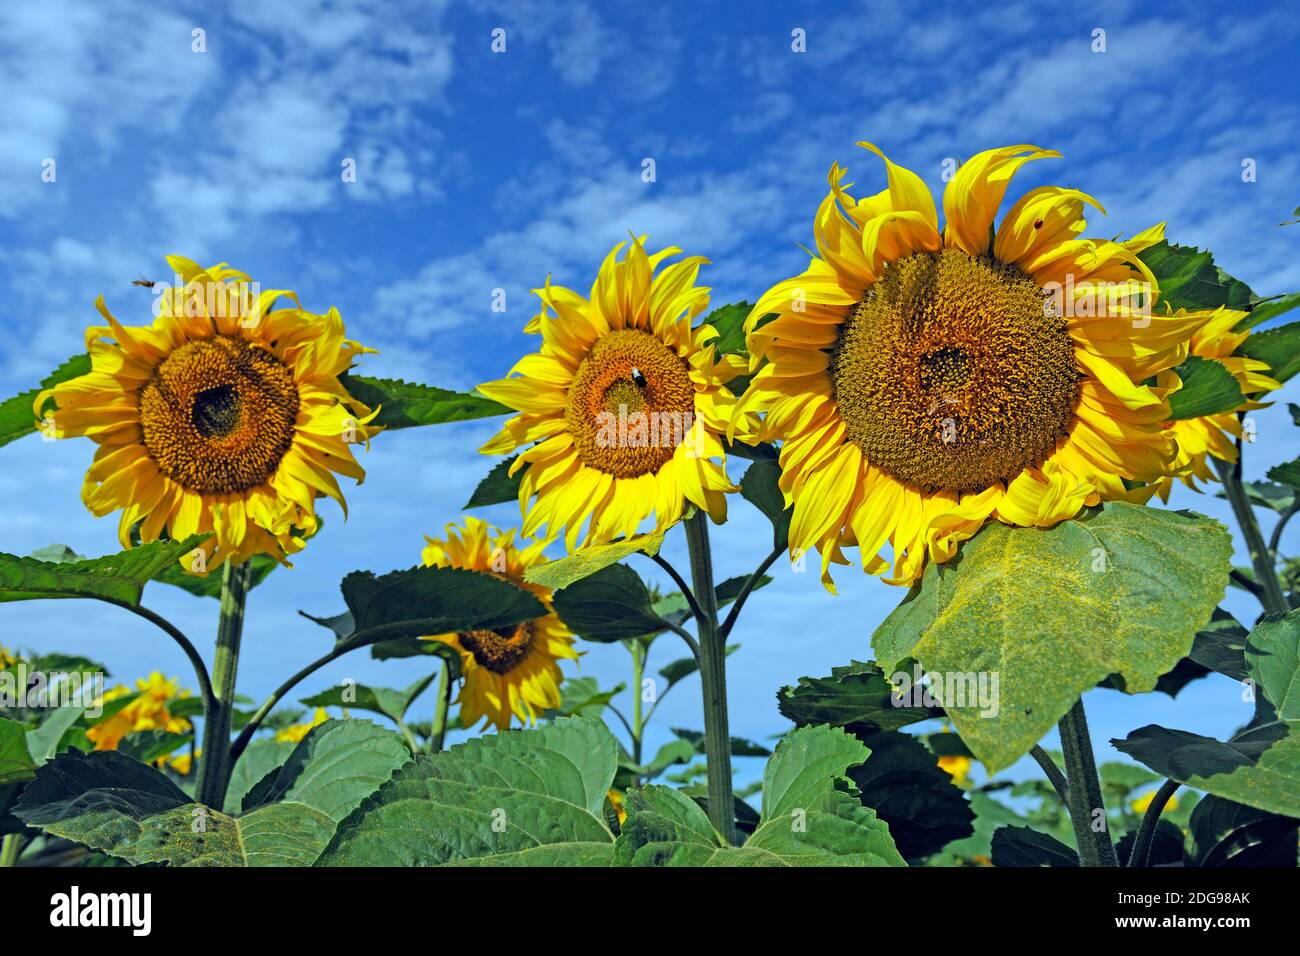 Sonnenblumen, (Helianthus annuus) Stock Photo